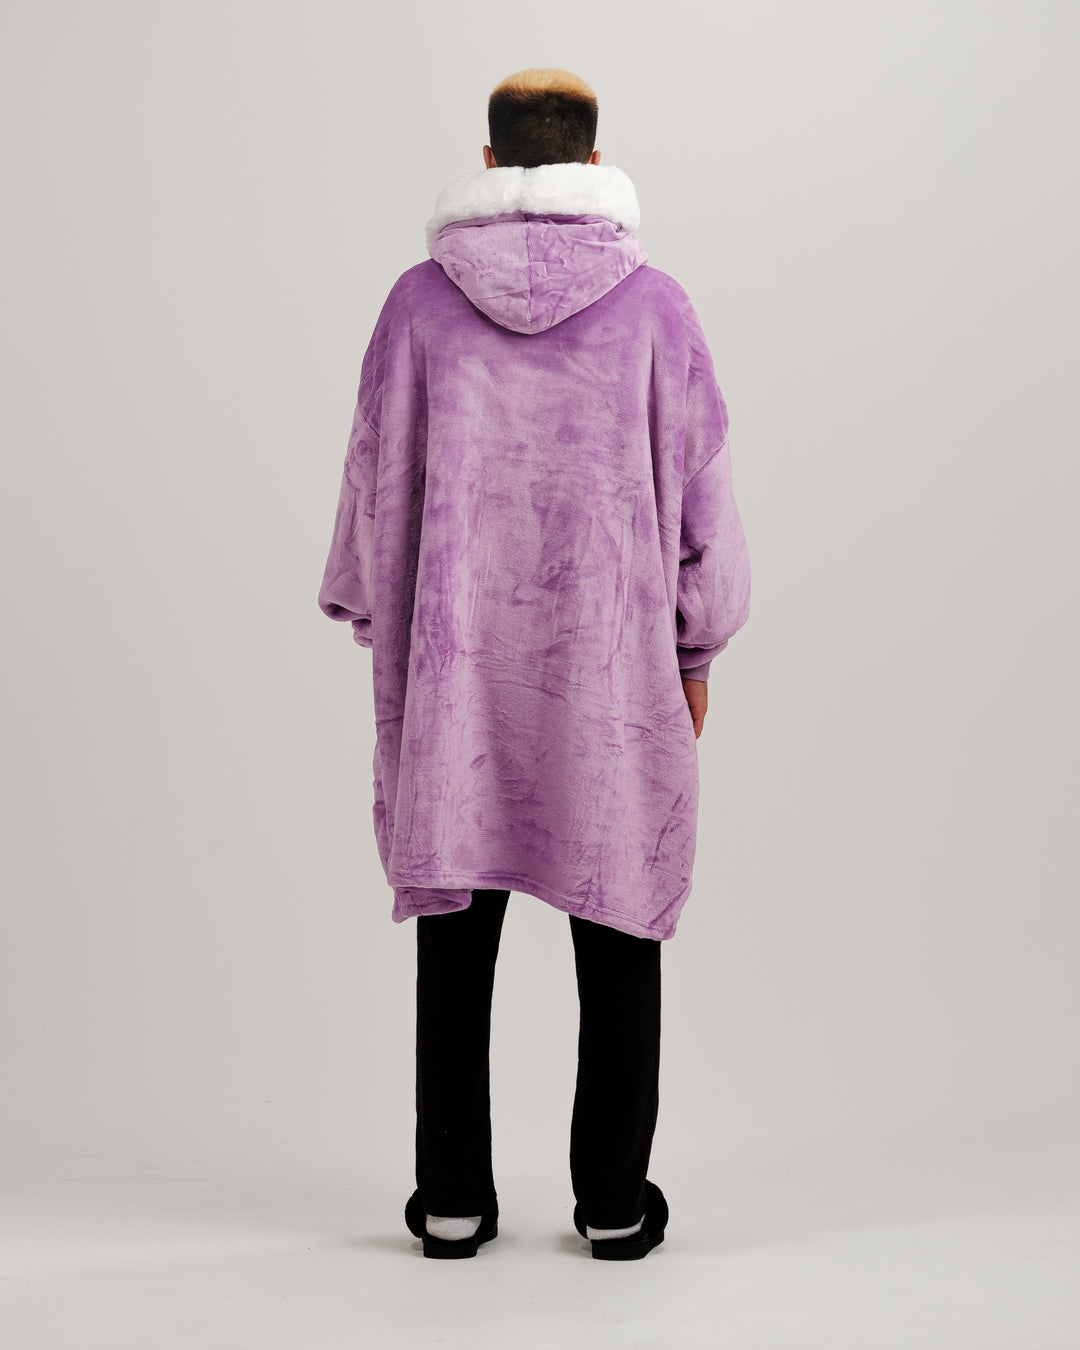 ONY Furlined Hoodie Blanket - Purple - It's Ony